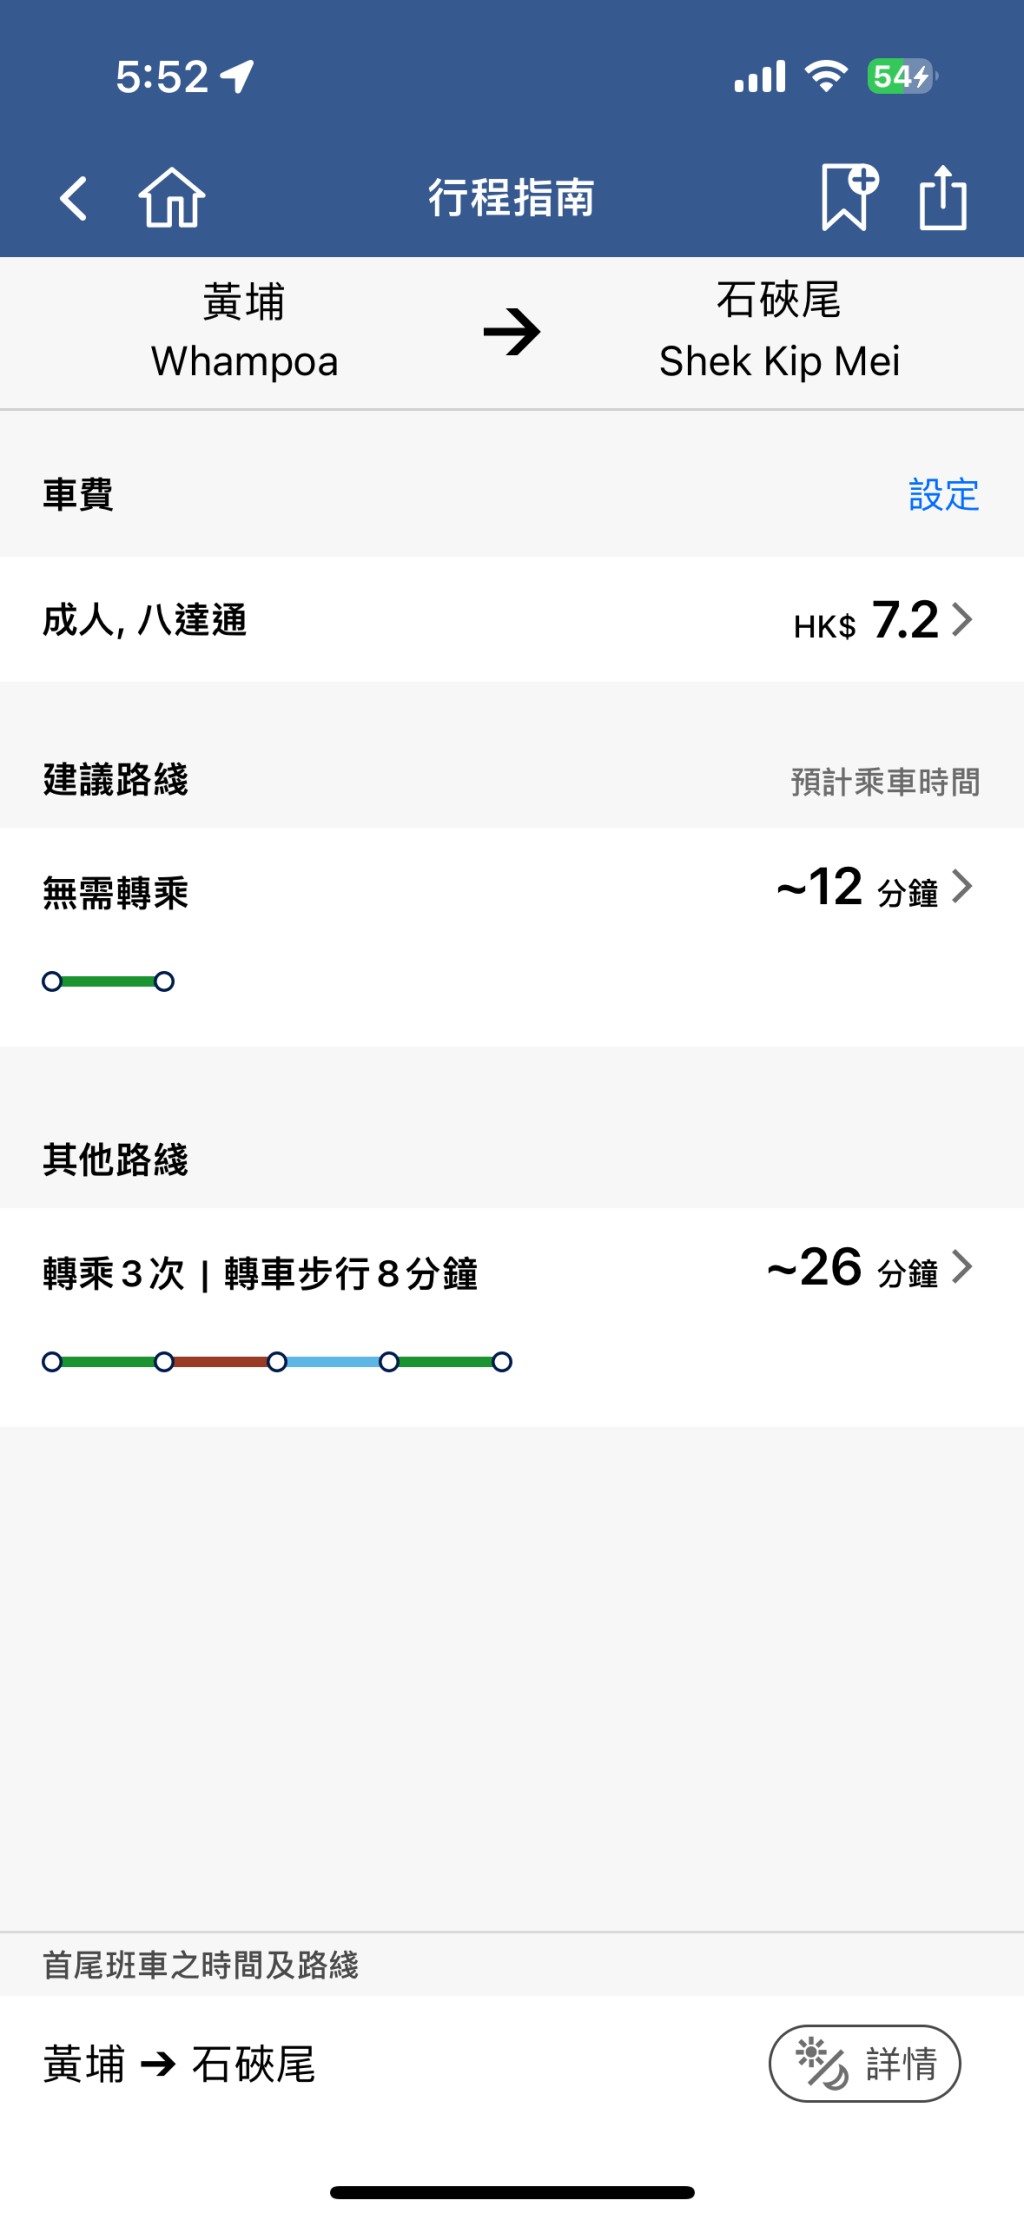 乘客若想從黃埔站去石硤尾站，根據港鐵APP行程指南，原本不用轉車，僅需時12分鐘。